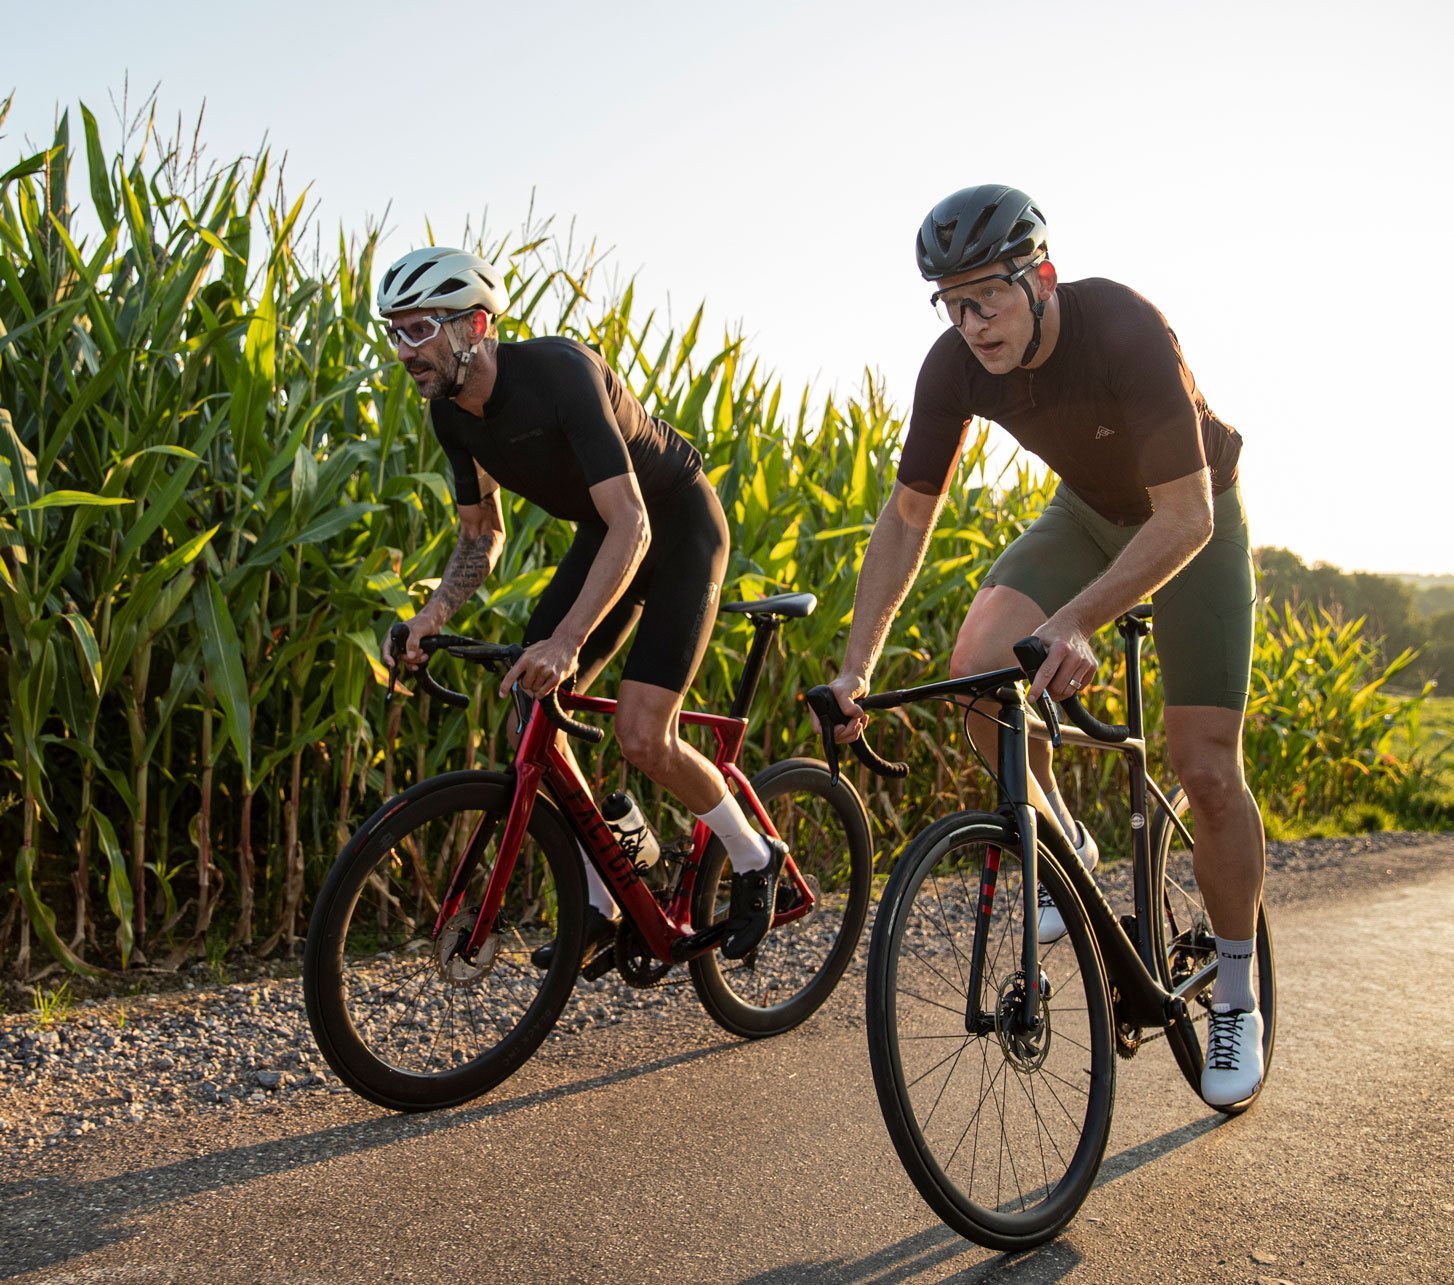 Zwei Rennradfahrer fahren im Wiegetritt in der Abendsonne